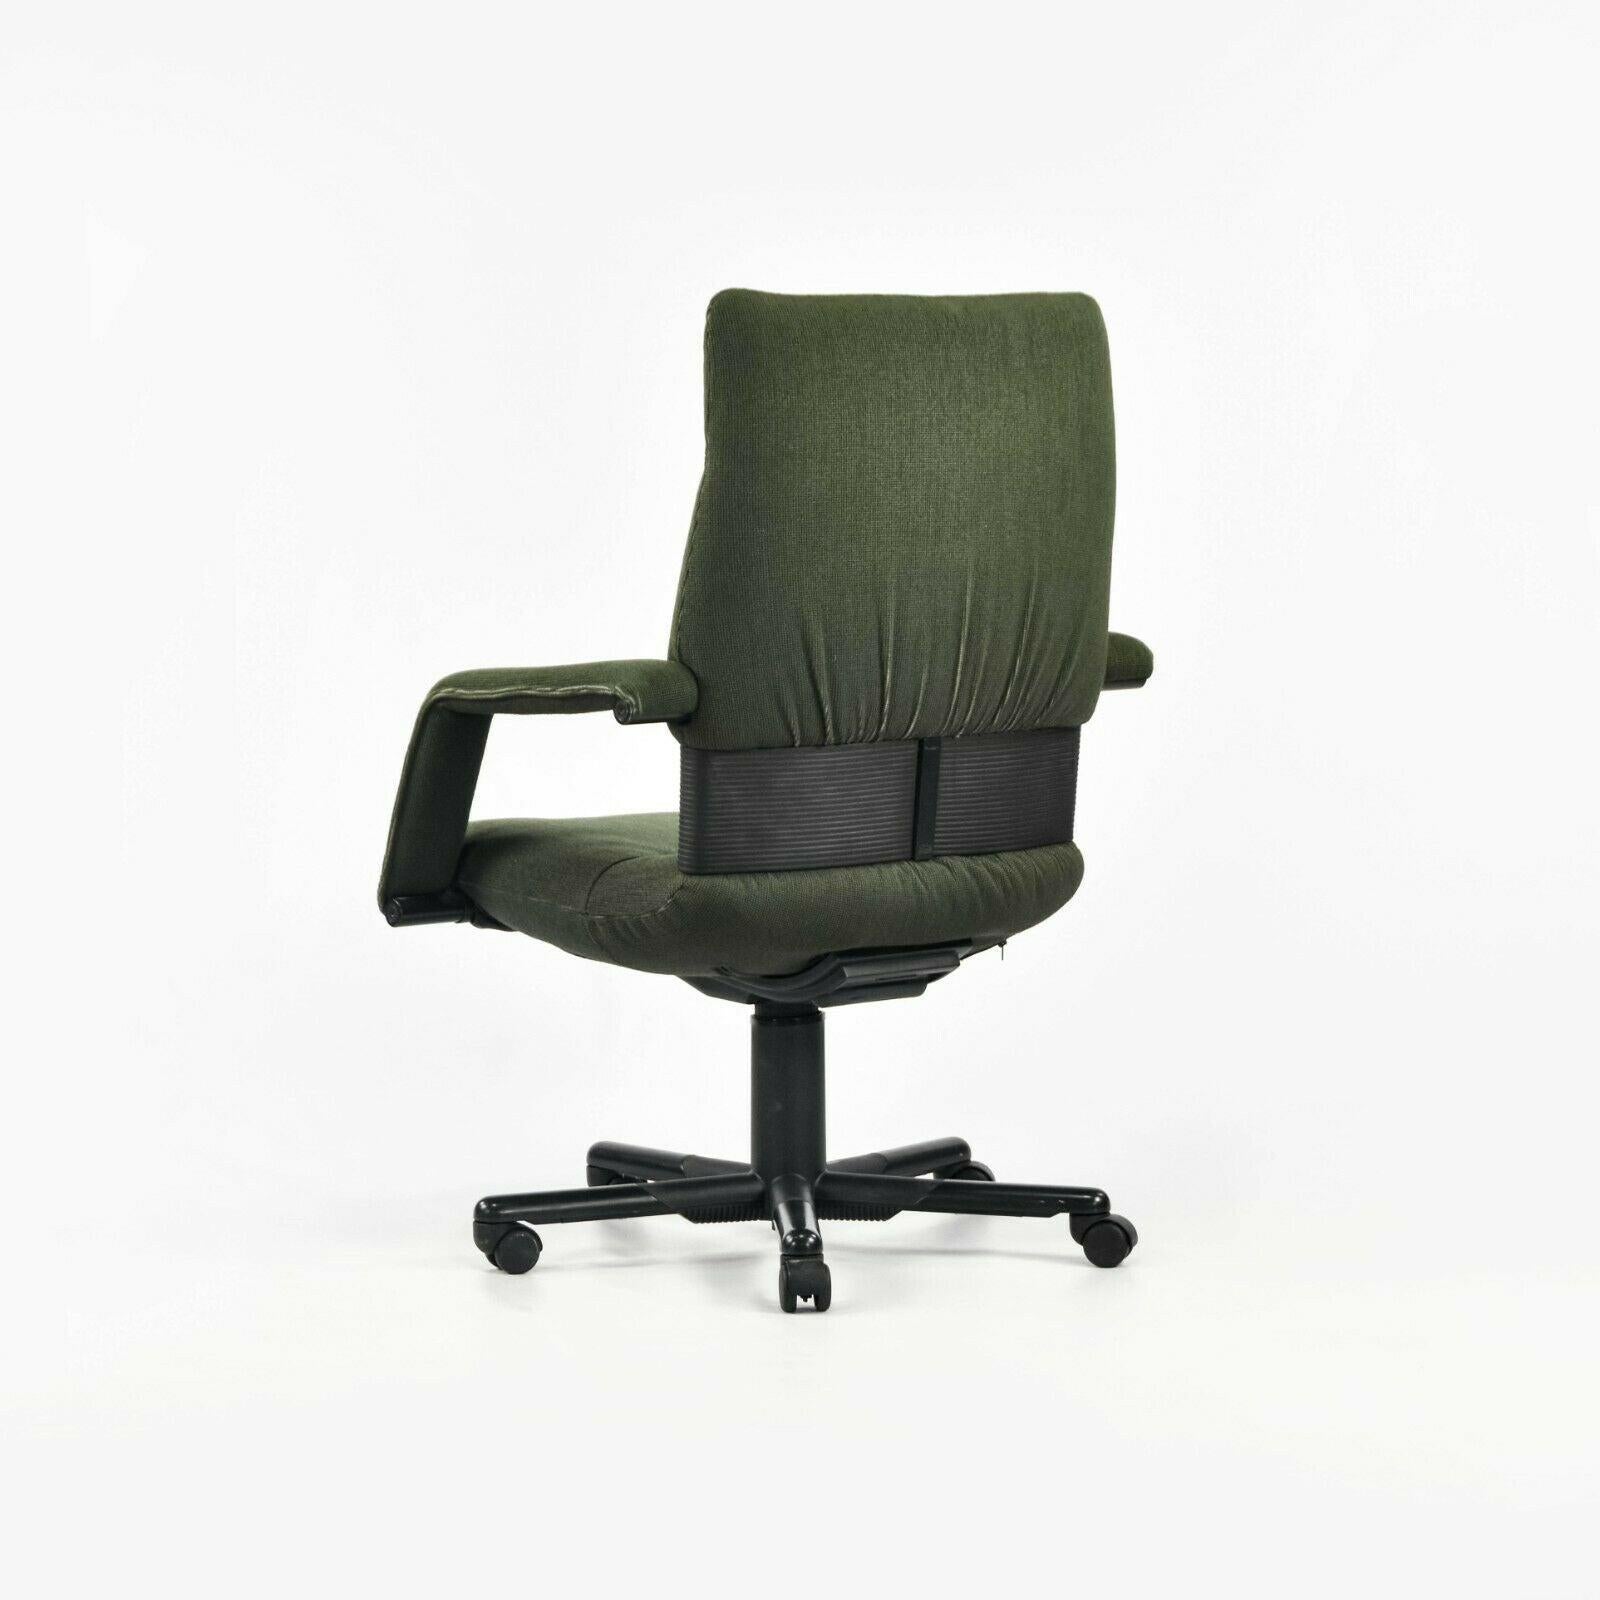 Fin du 20e siècle Chaise de bureau post-moderne à haut dossier en tissu vert Mario Bellini Vitra Figura, 1997 en vente